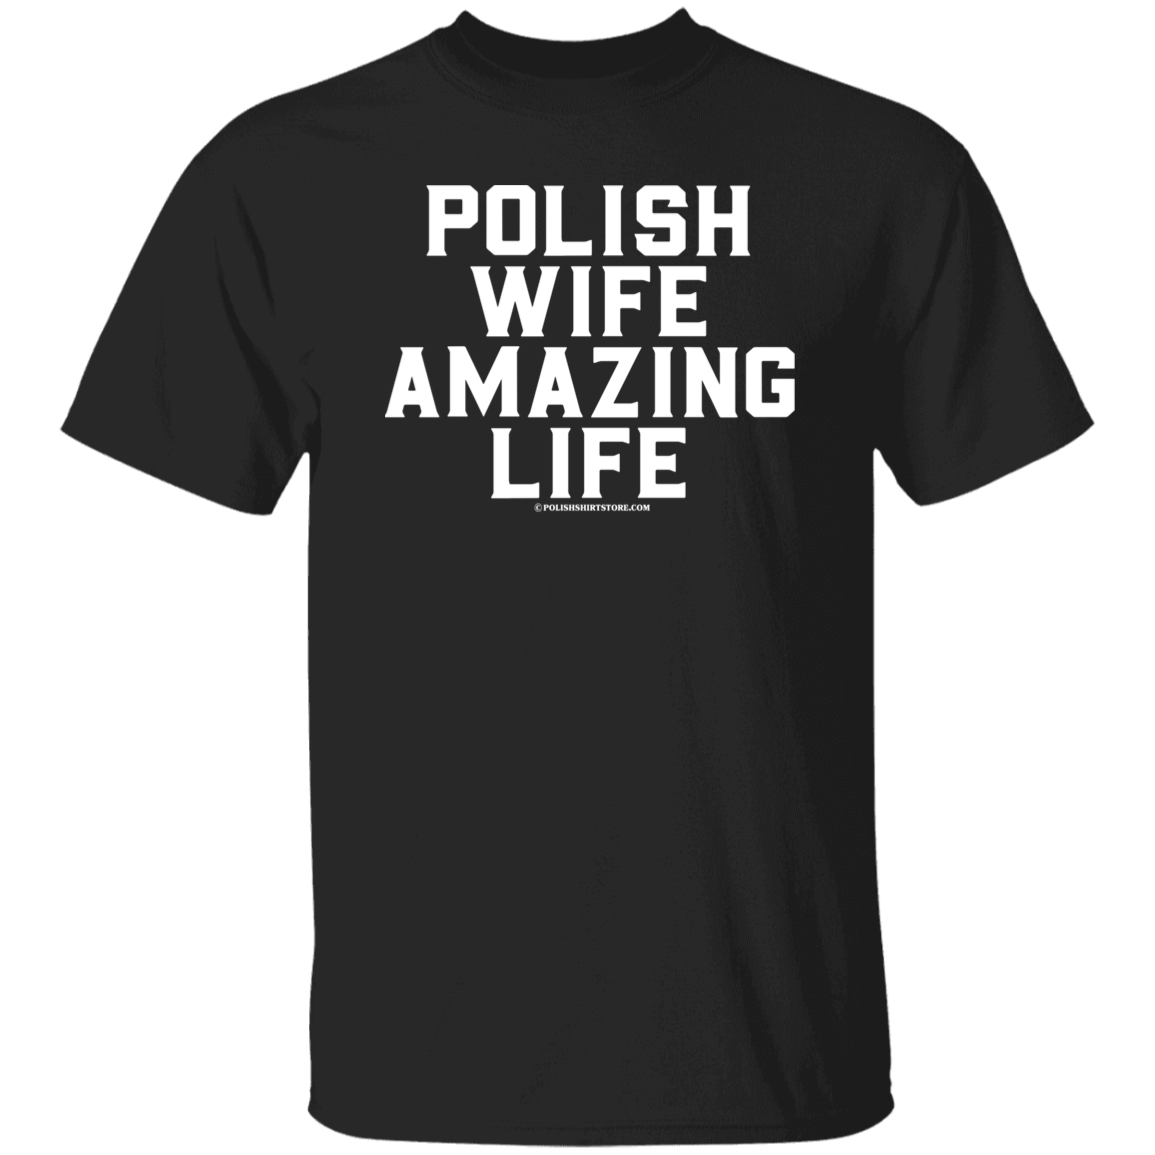 Polish Wife Amazing Life Apparel CustomCat G500 5.3 oz. T-Shirt Black S